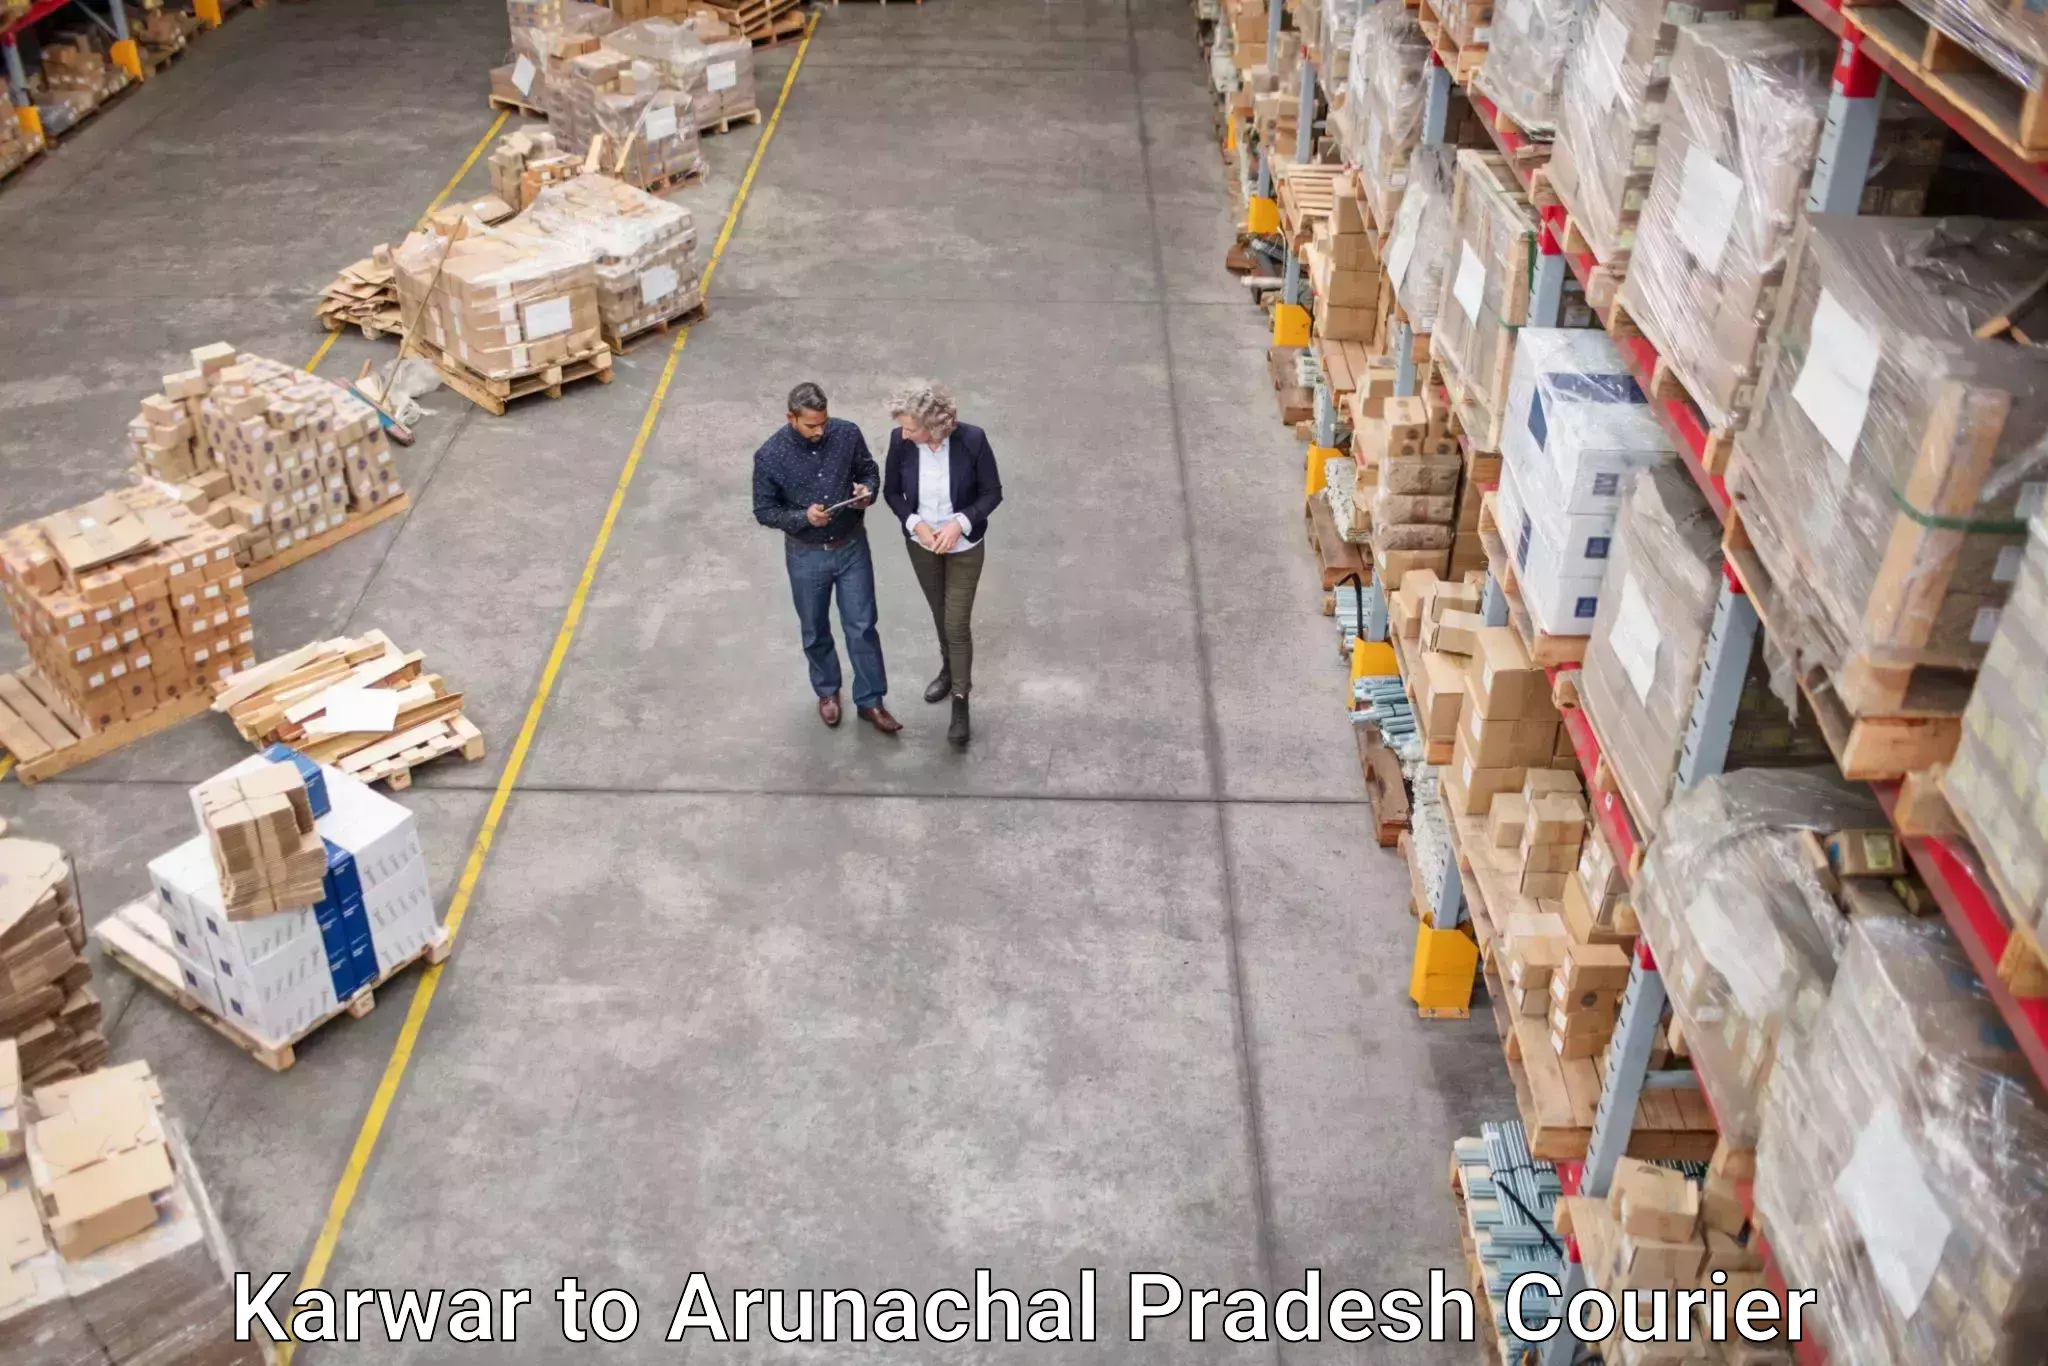 Nationwide delivery network Karwar to Arunachal Pradesh